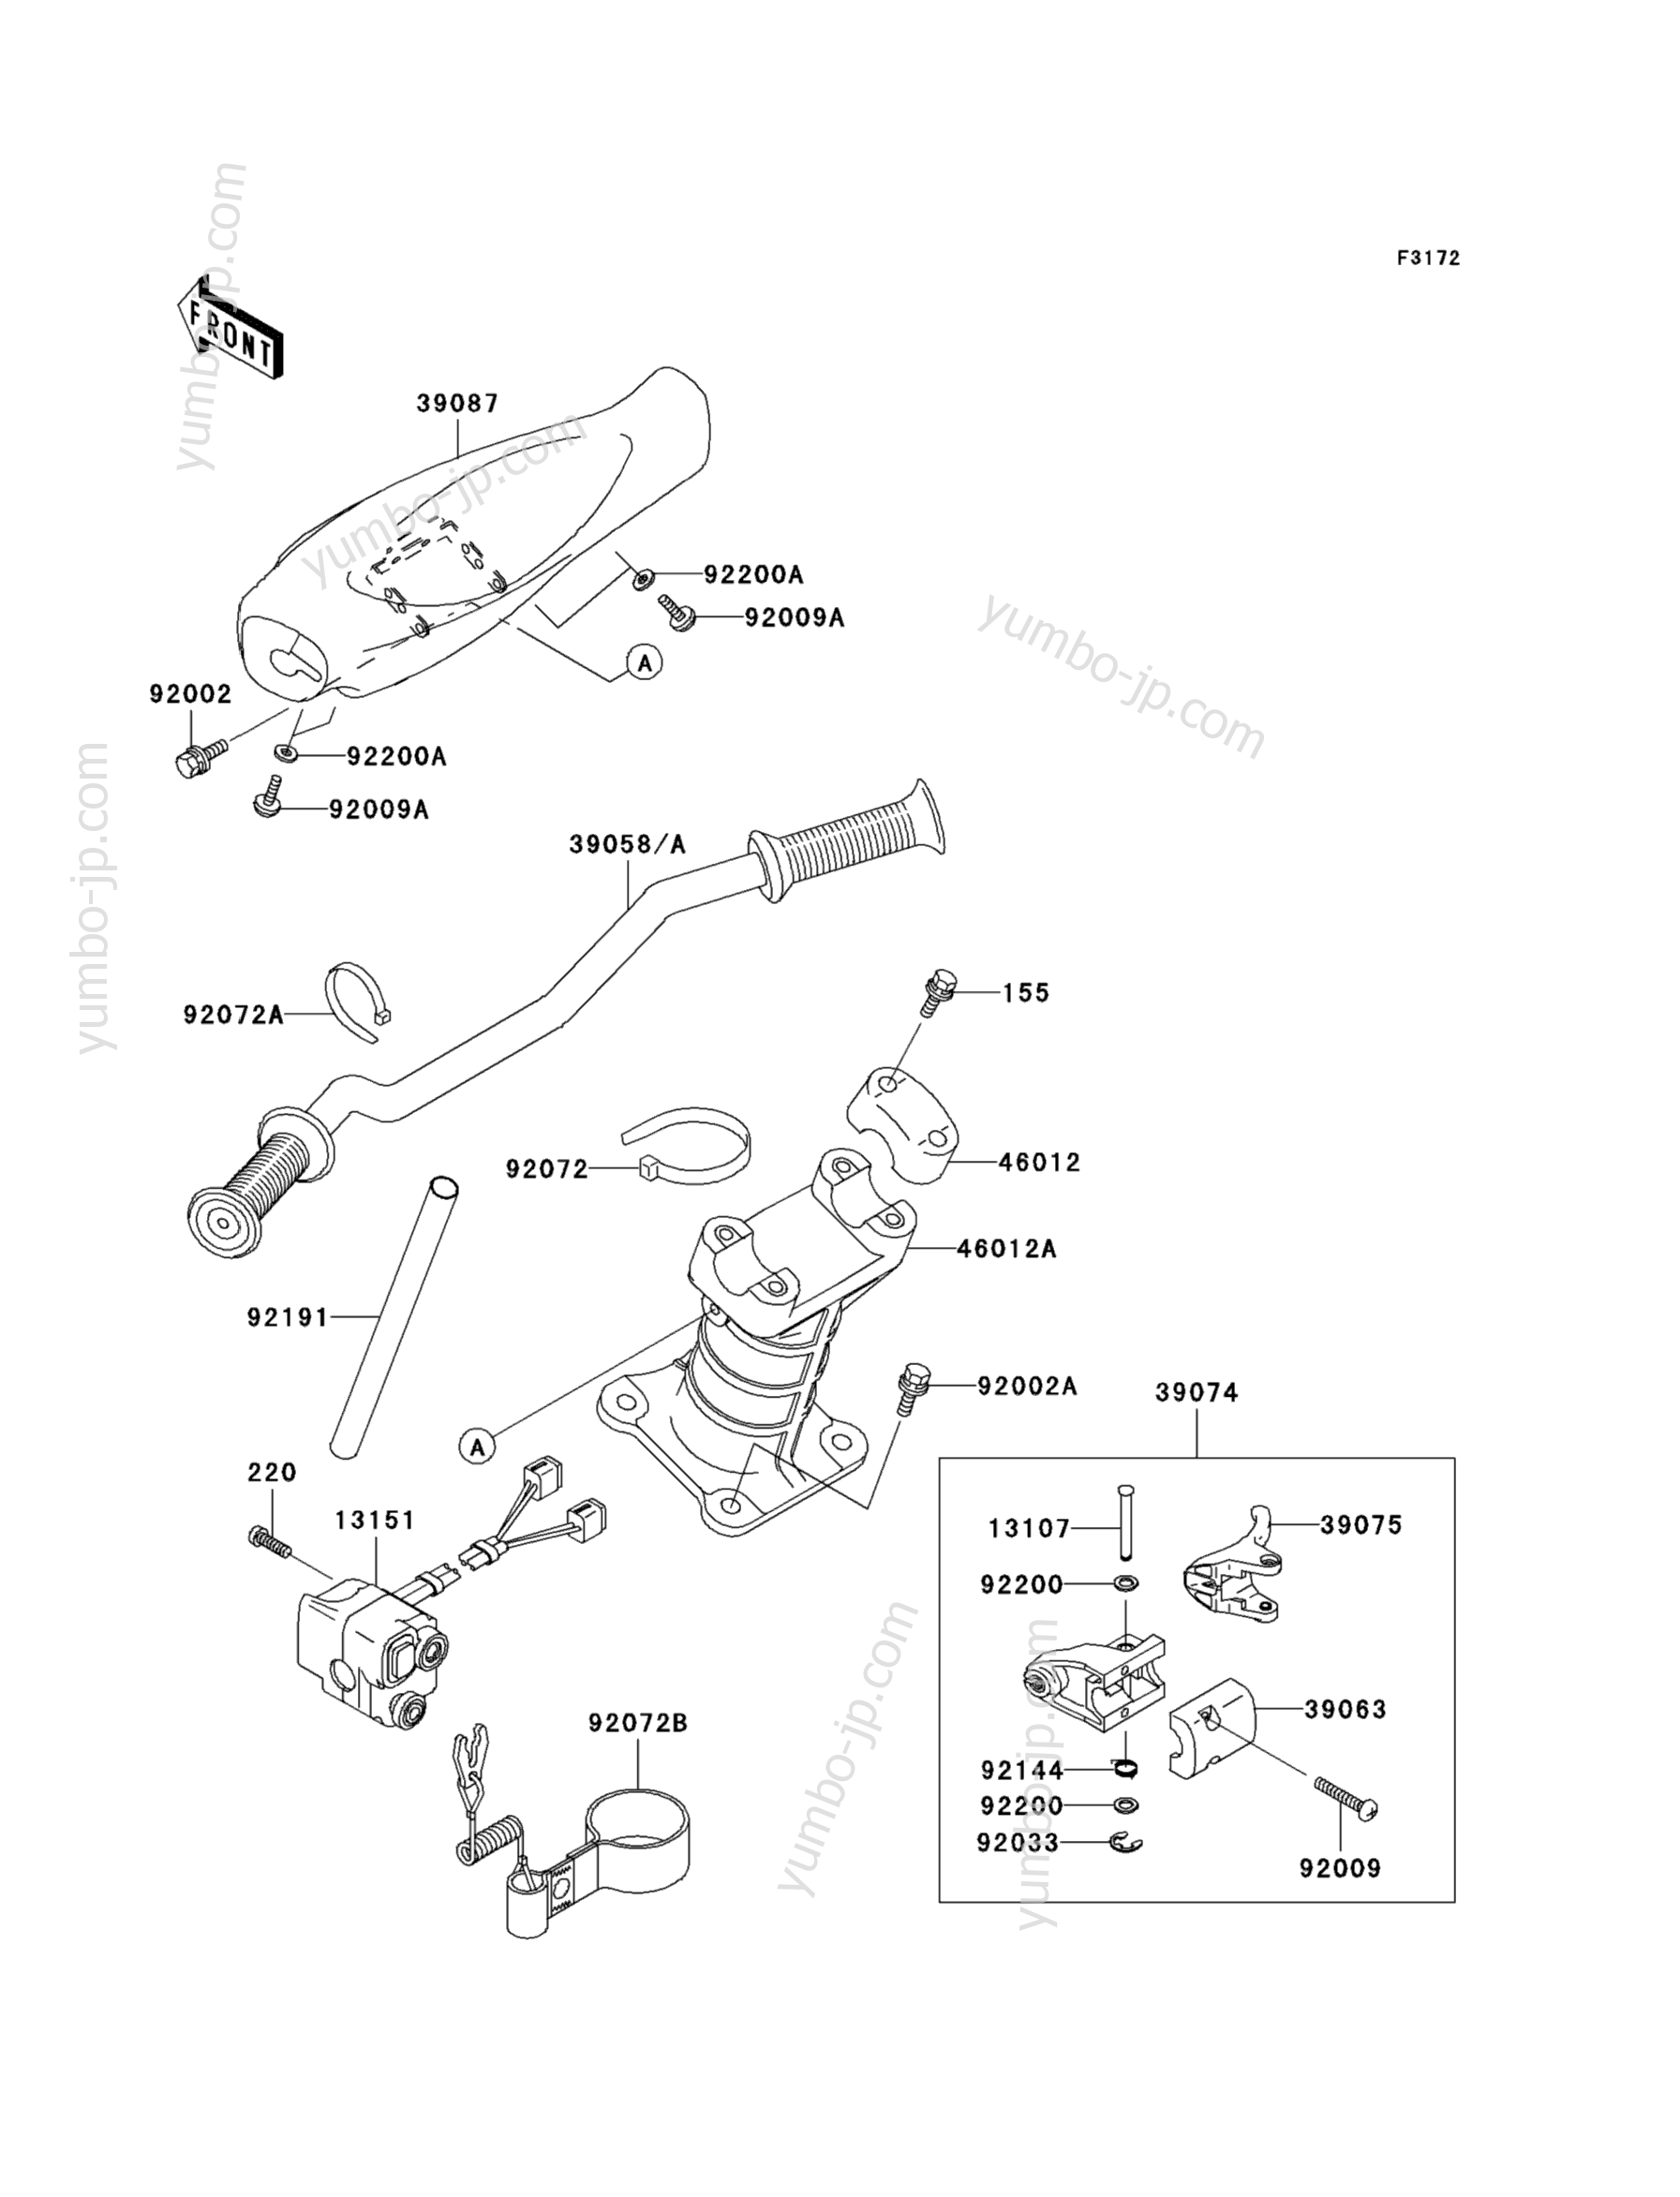 Румпель (рукоятка управления) для гидроциклов KAWASAKI JET SKI 1100 ZXI (JH1100-A6) 2001 г.